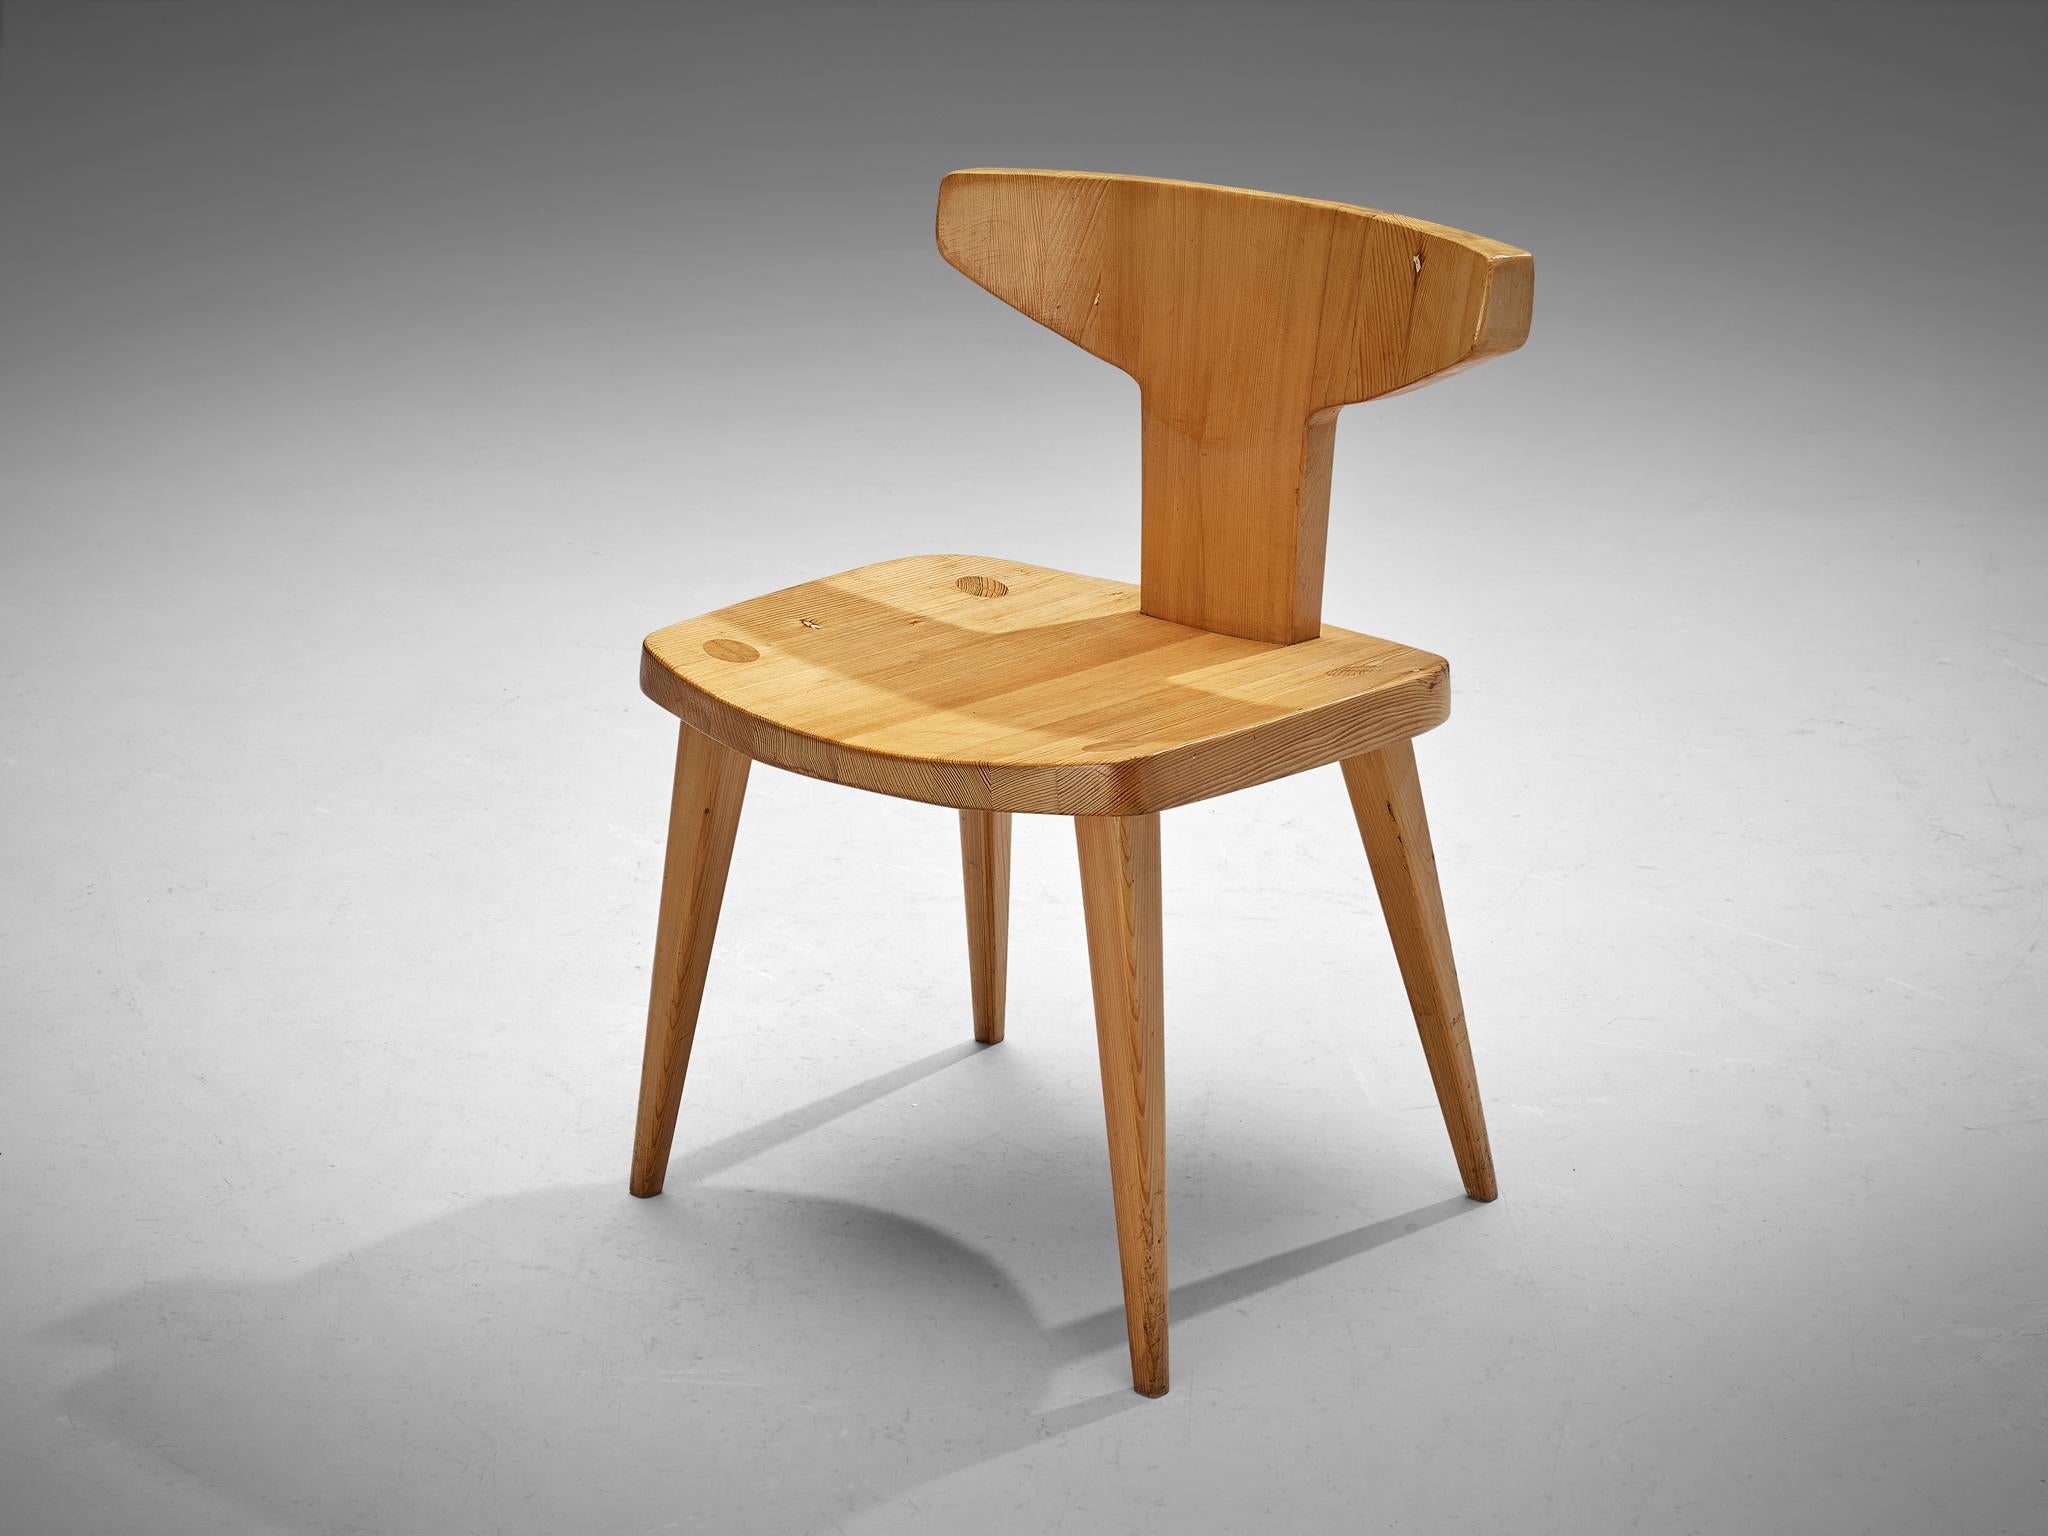 Jacob Kielland-Brandt, chaise, pin massif, Danemark, années 1960

Cette chaise remarquable, conçue par Jacob Kielland-Brandt, est une expression forte. Le dossier est doté d'un support de forme organique qui garantit une assise confortable. La